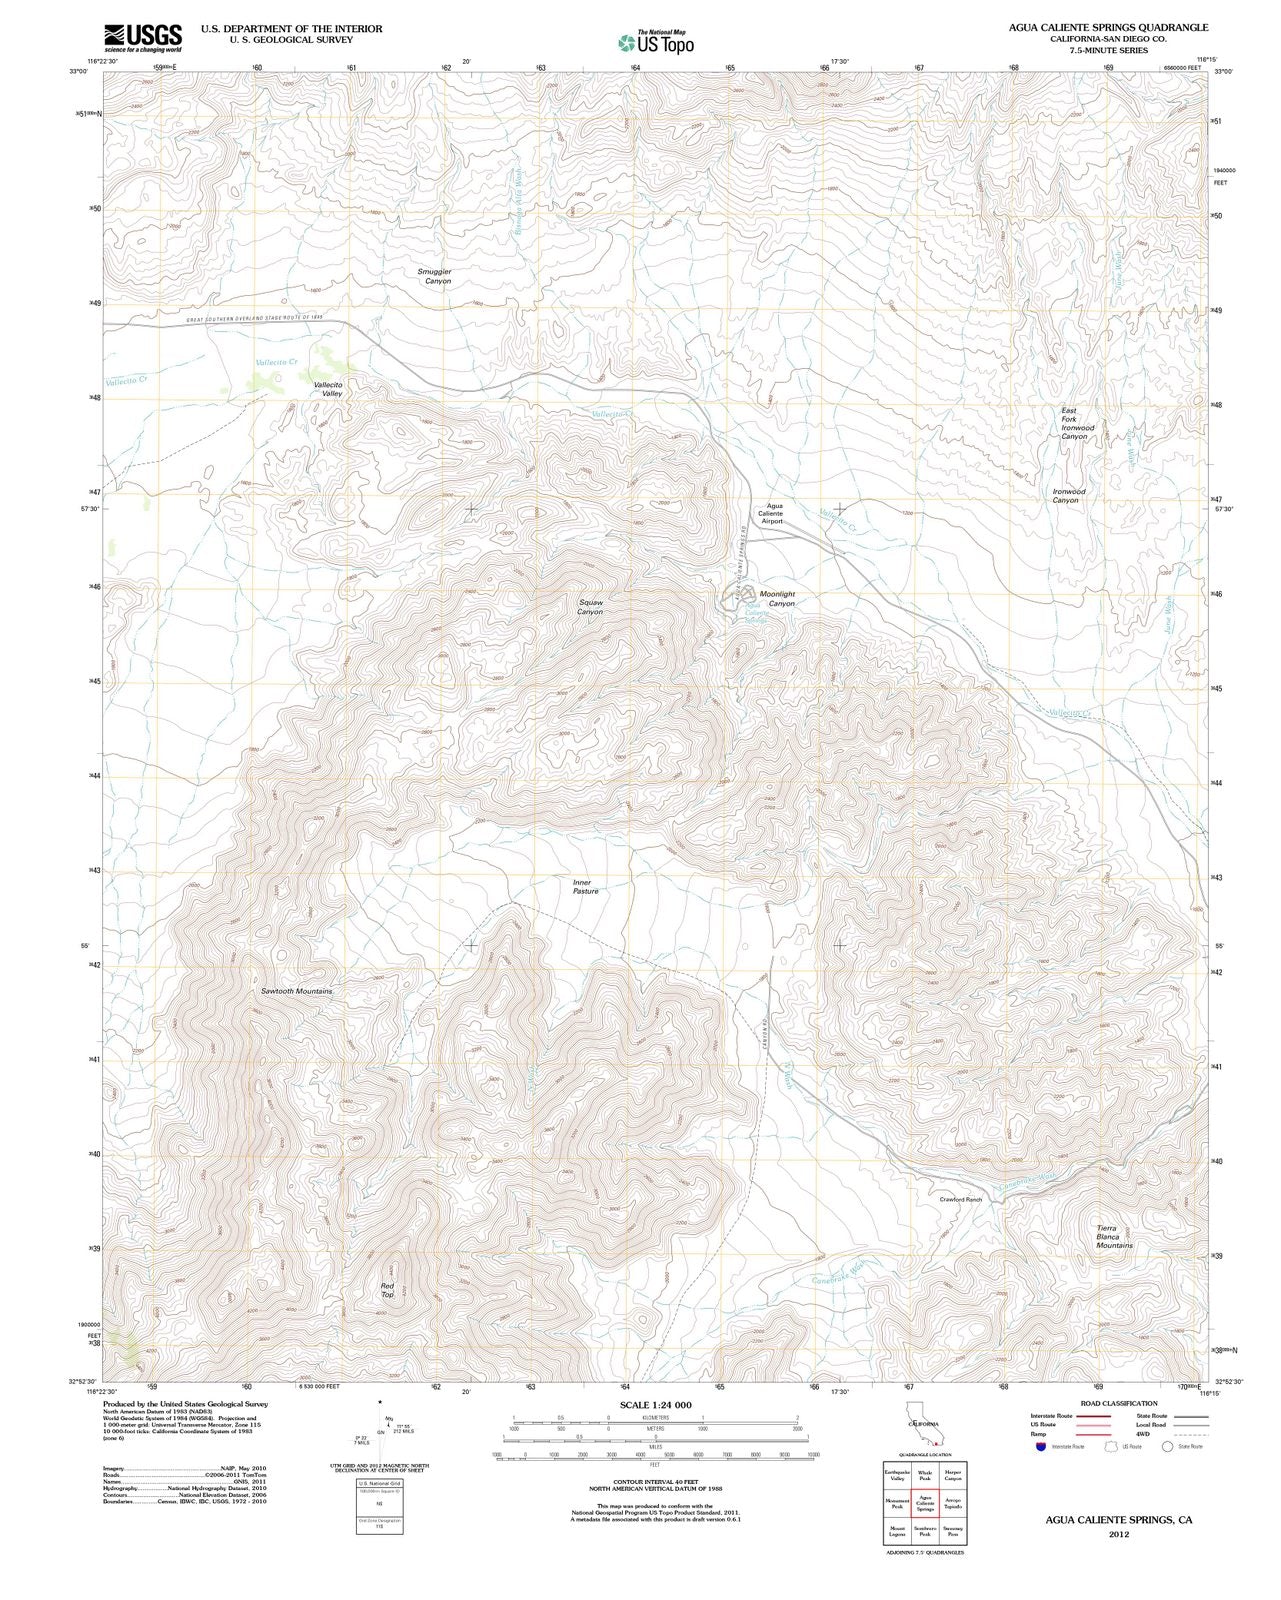 2012 Agua Caliente Springs, CA - California - USGS Topographic Map